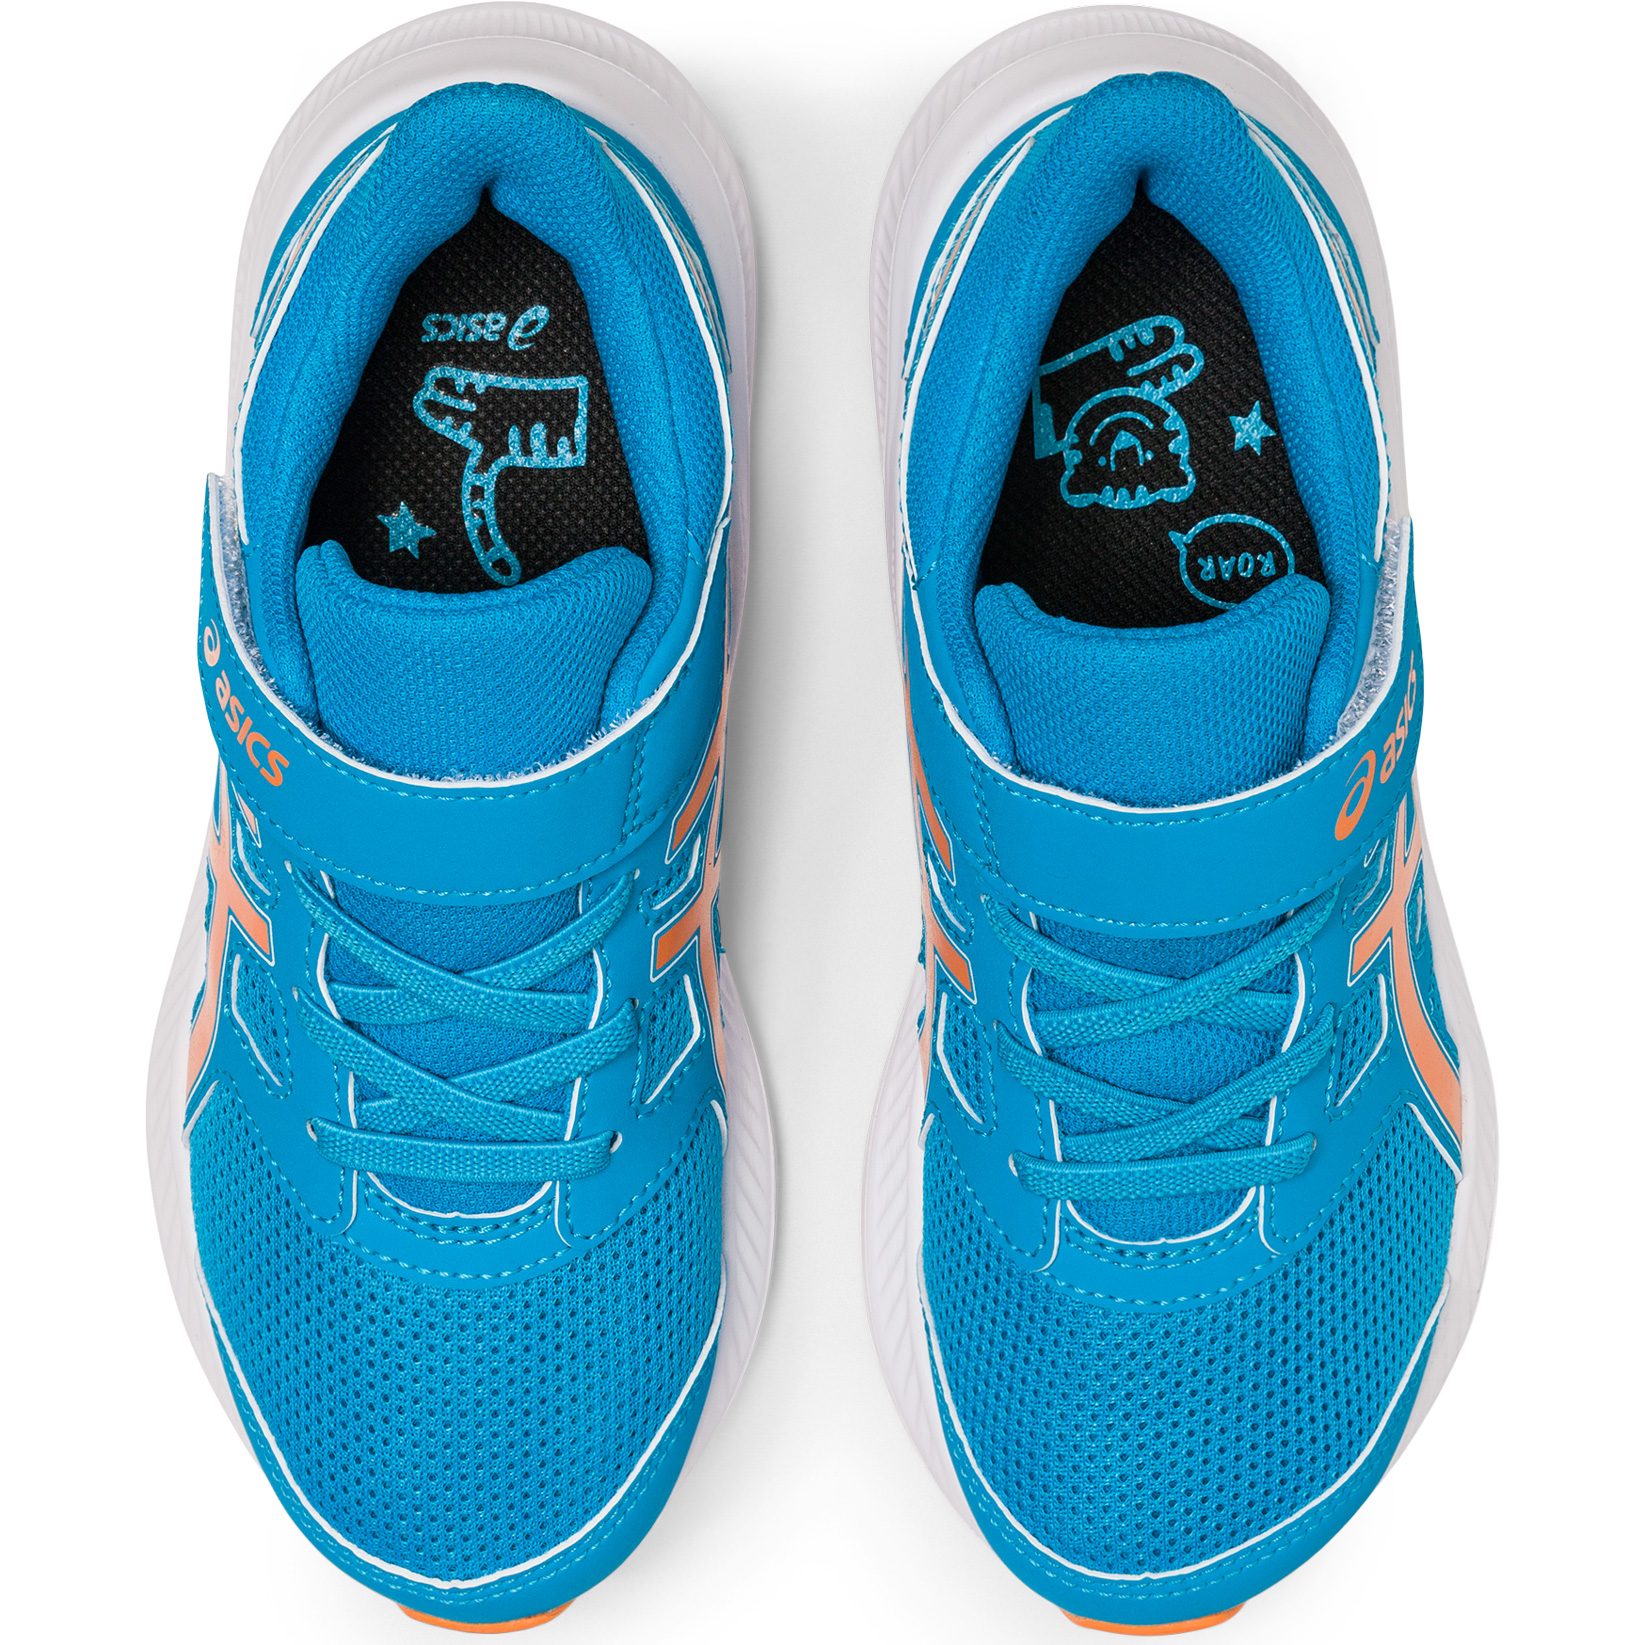 ASICS - Jolt 4 PS Running Shoes Kids island blue at Sport Bittl Shop